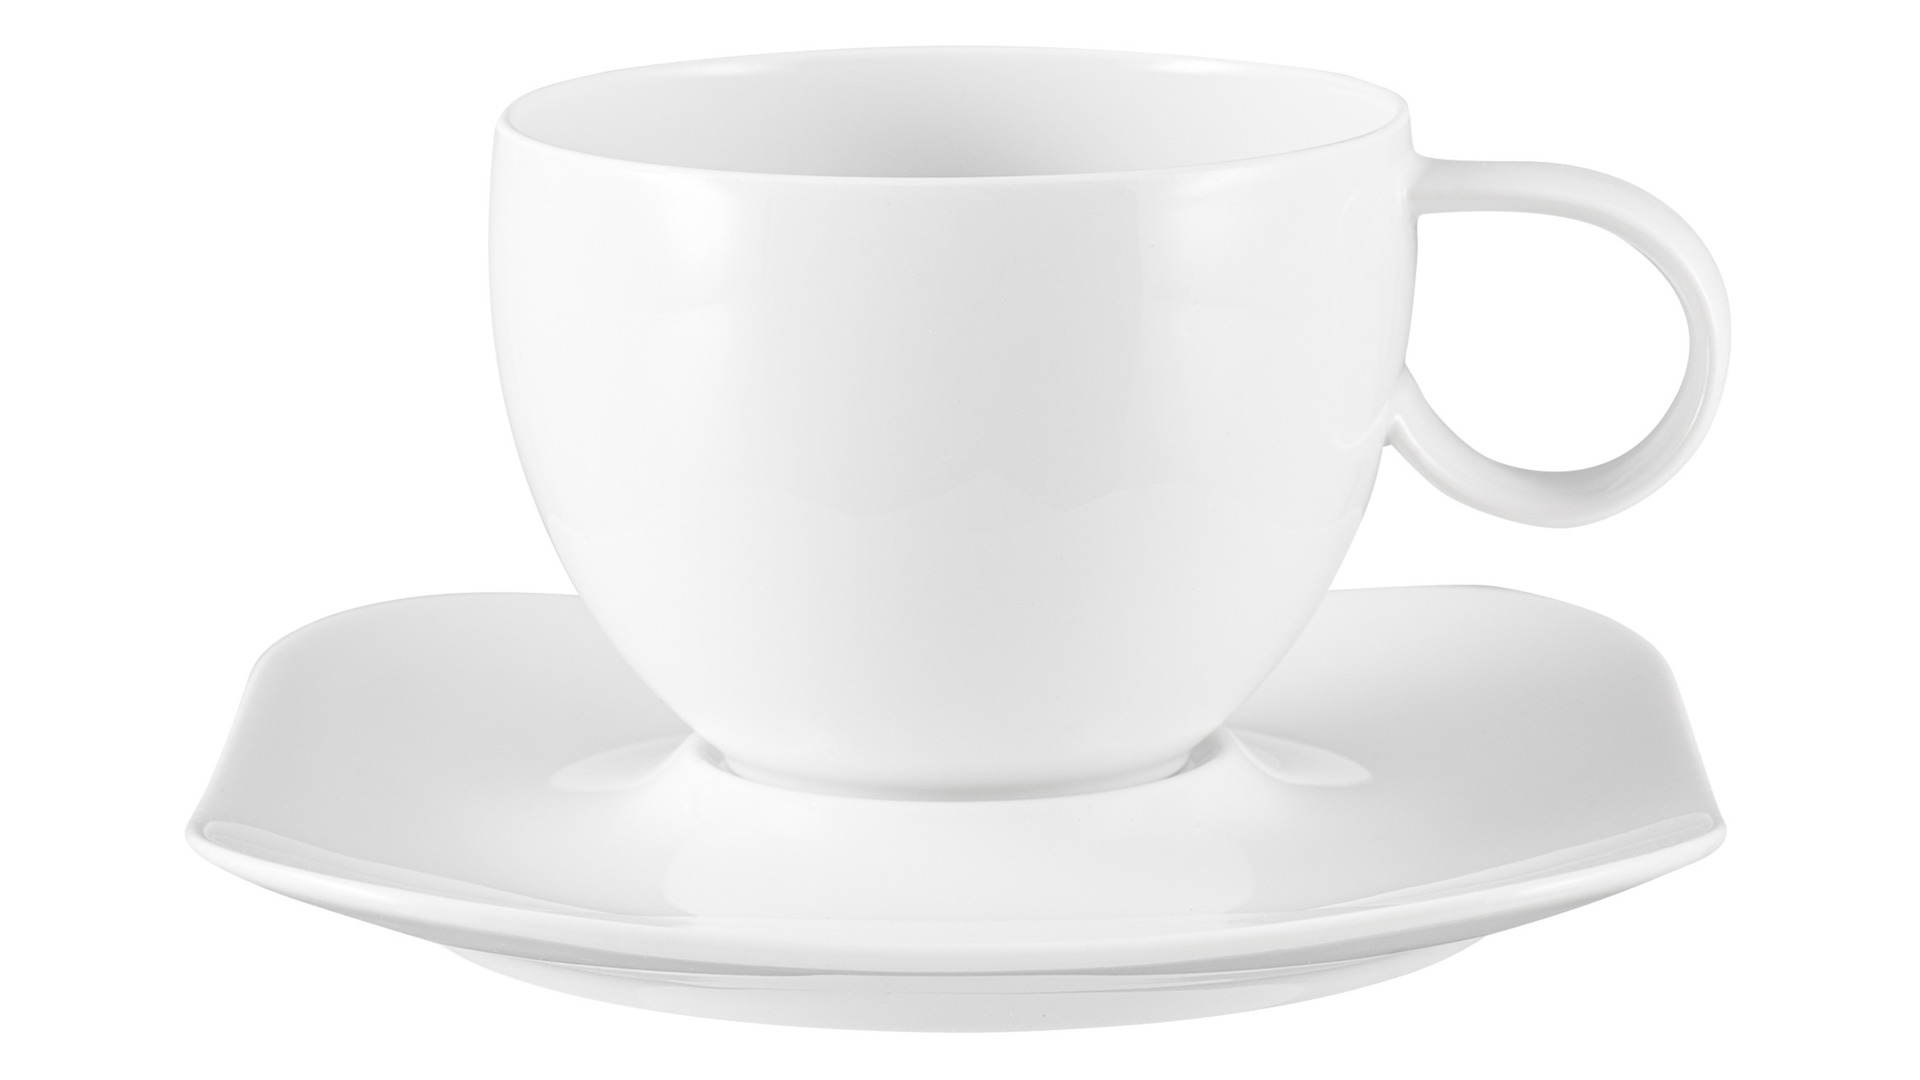 Чашка чайно-кофейная с блюдцем Rosenthal Фри Спирит Вайс 290 мл, фарфор